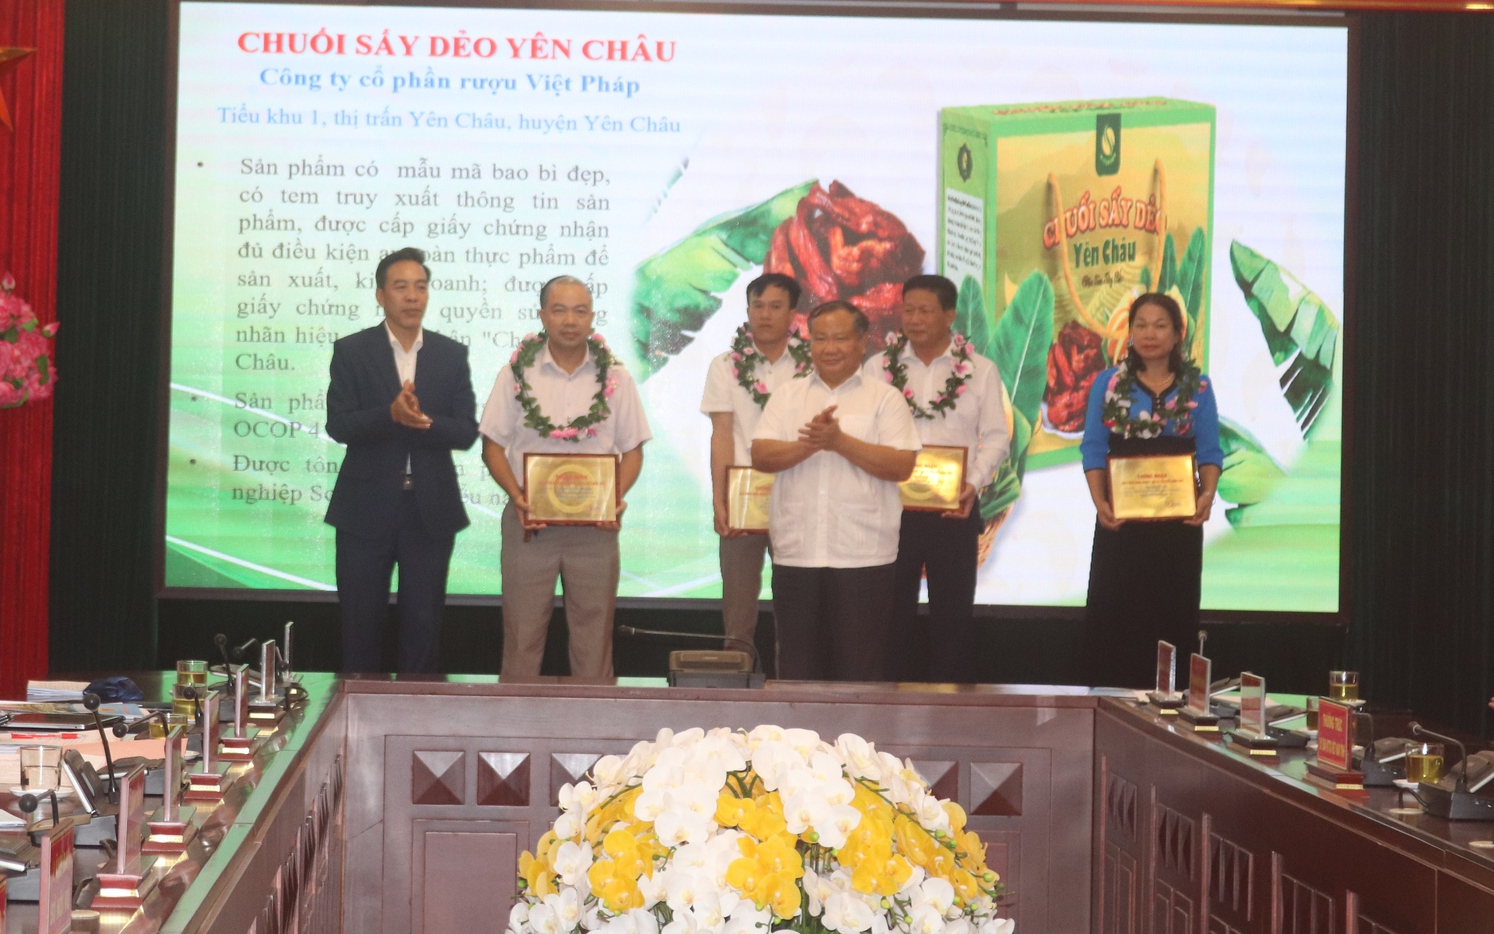 Chủ tịch UBND tỉnh Sơn La đối thoại với nông dân: Tập trung phát triển nông nghiệp xanh, nhanh và bền vững